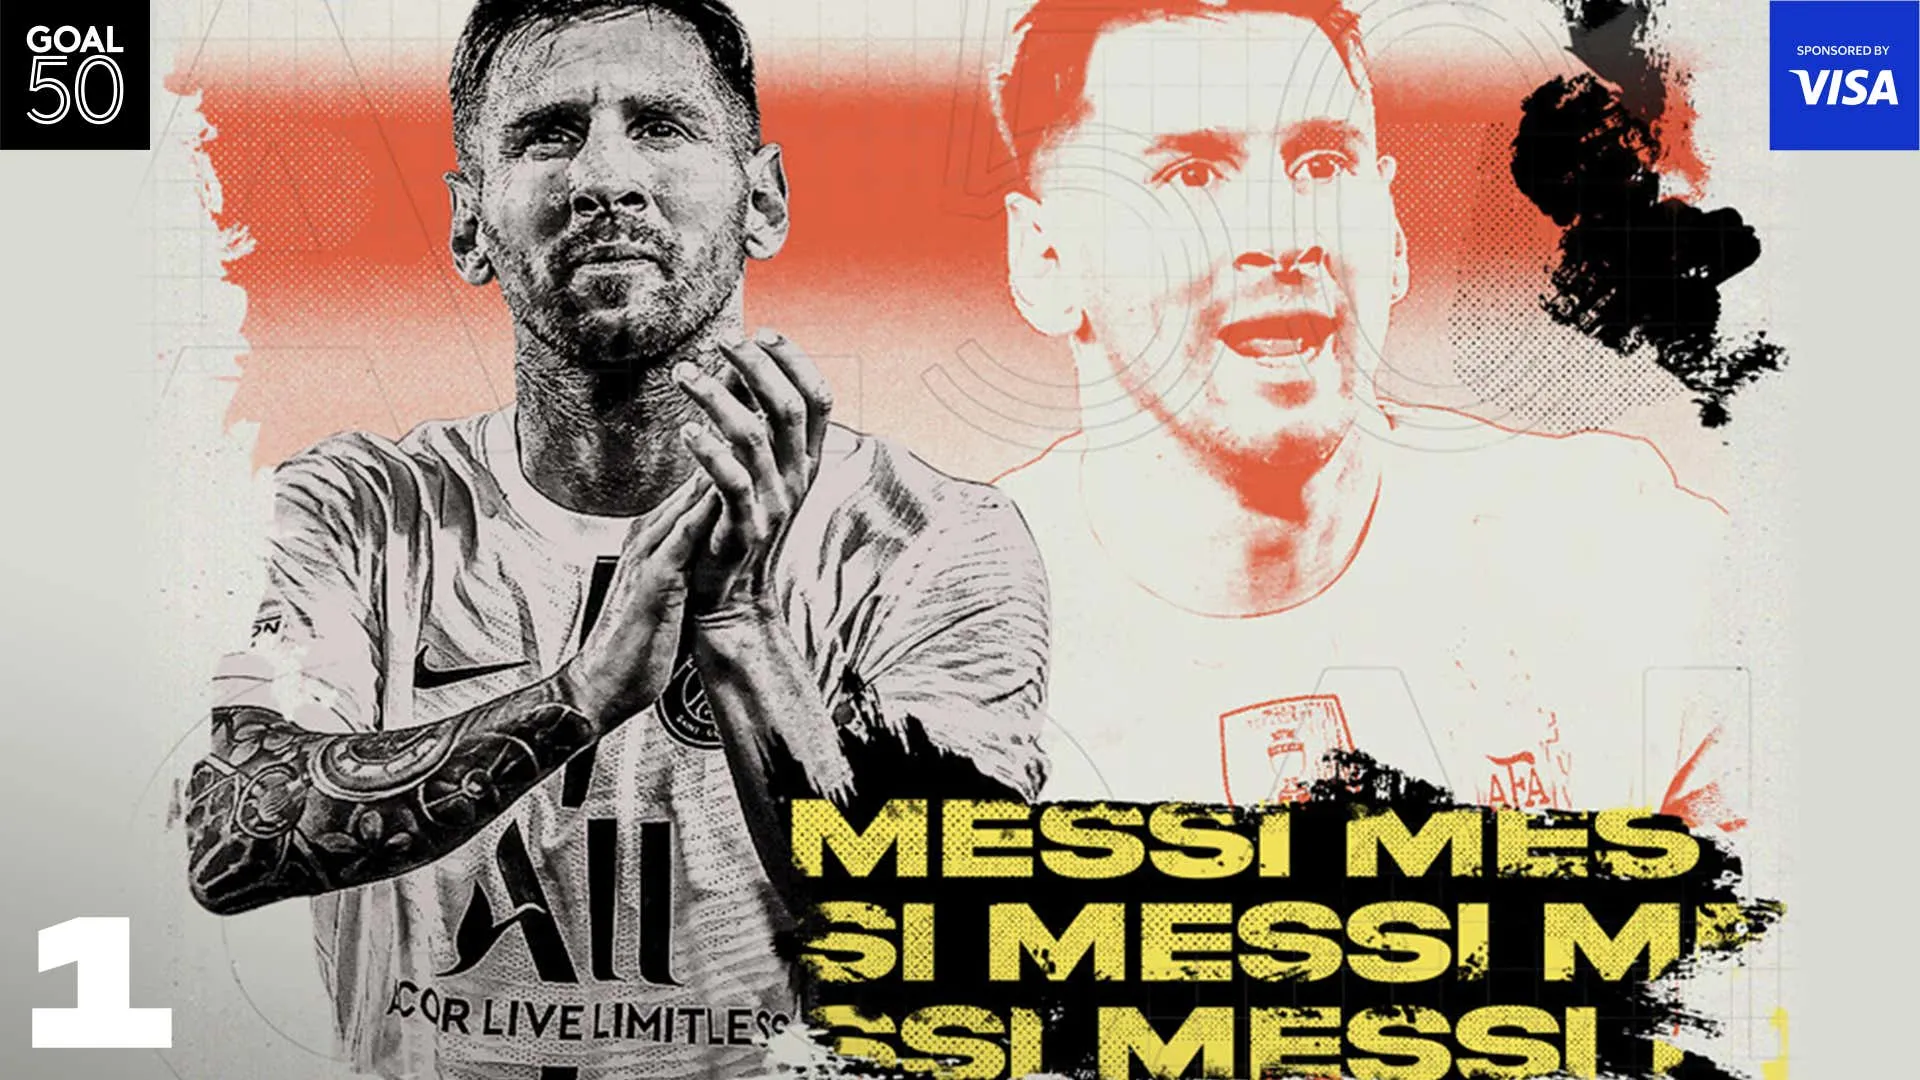 Messi đã giành chiến thắng ở giải thưởng GOAL50 - Barca muốn đưa Messi và Iniesta trở lại